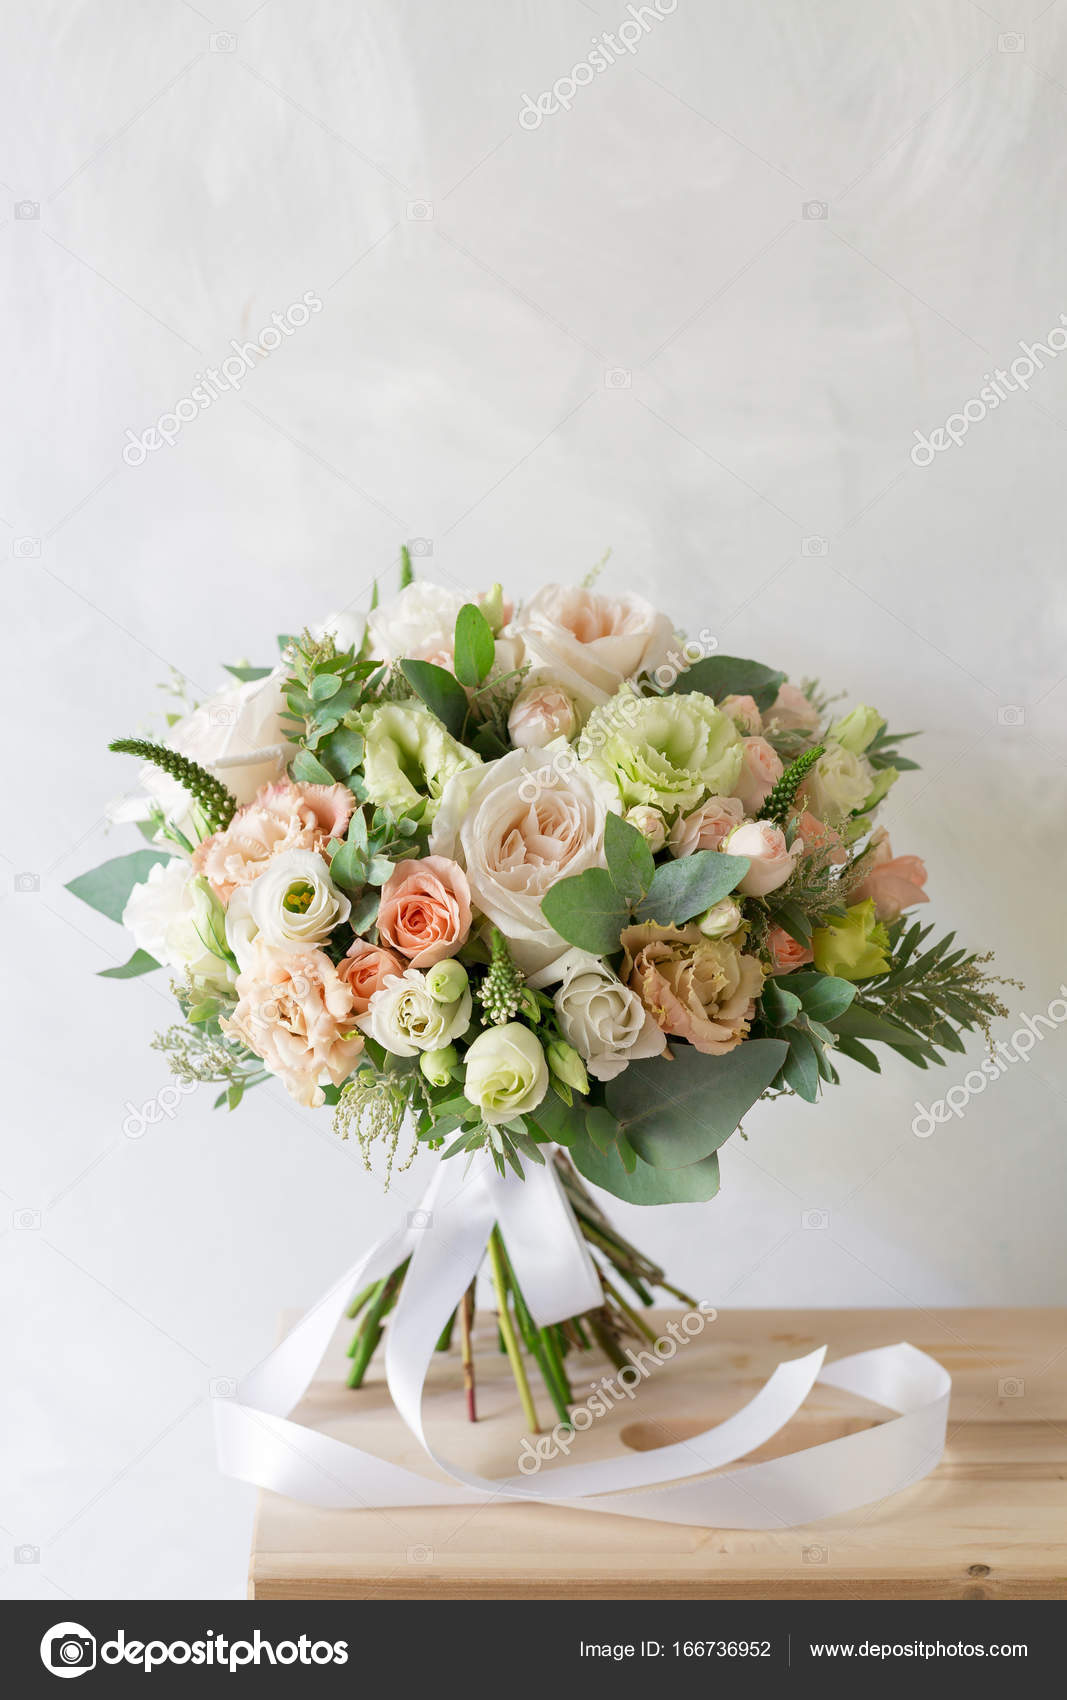 Buquê de noiva. Um simples buquê de flores e verduras — Fotografias de  Stock © MalkovKosta #166736952